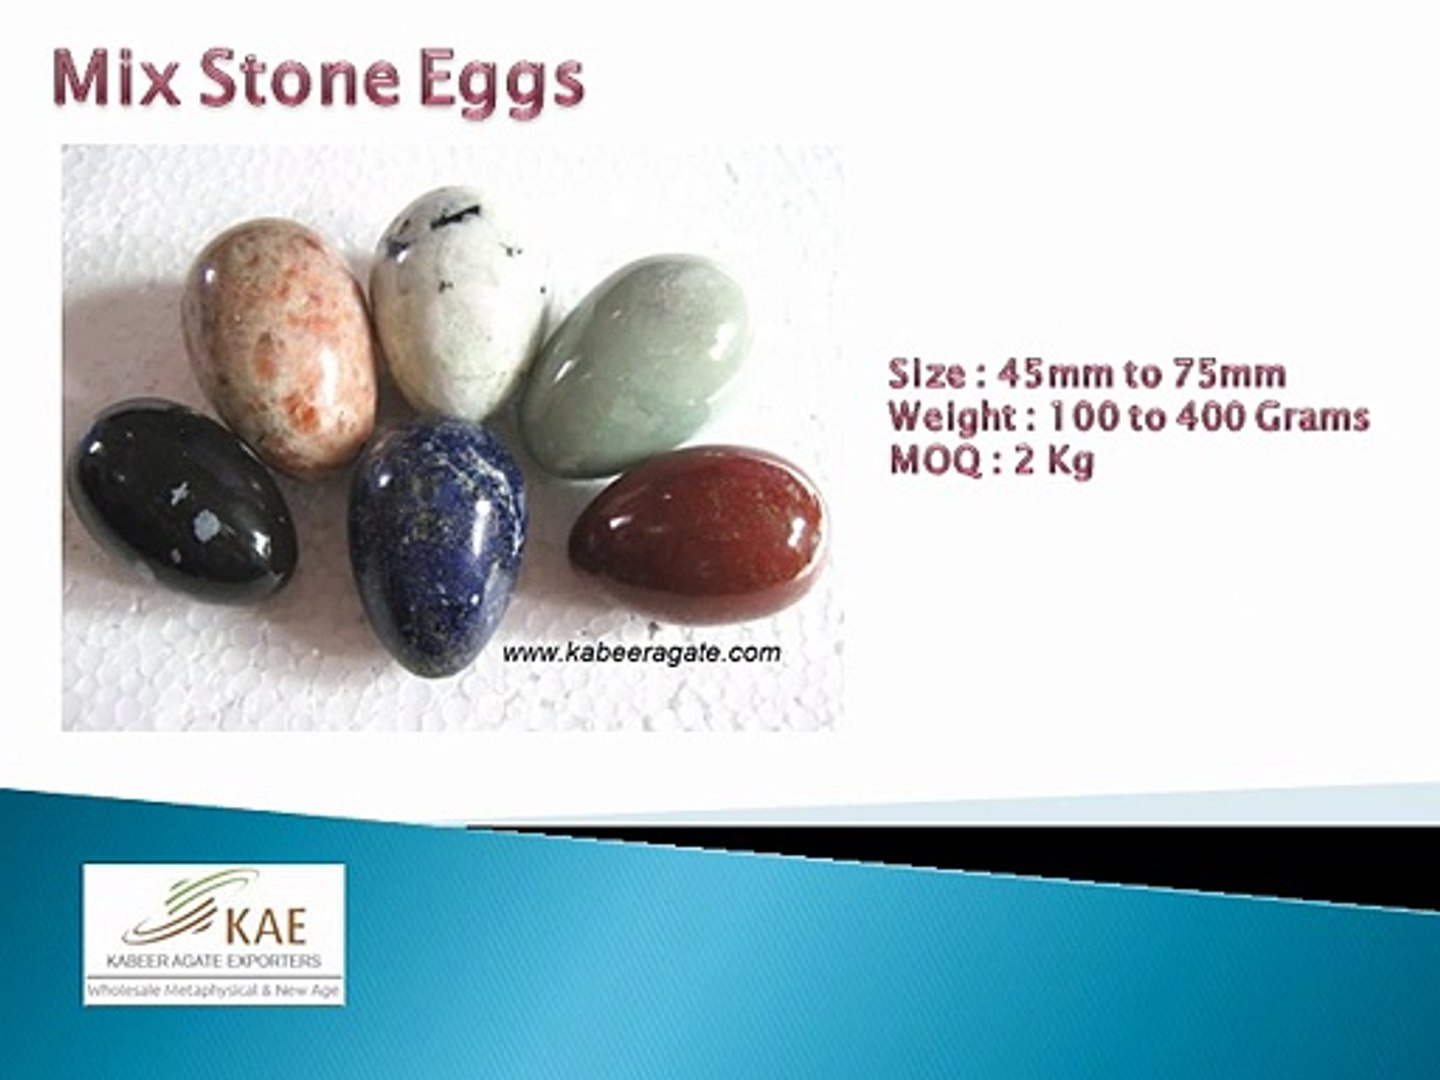 Wholesale Gemstone Eggs Australia, UK, USA